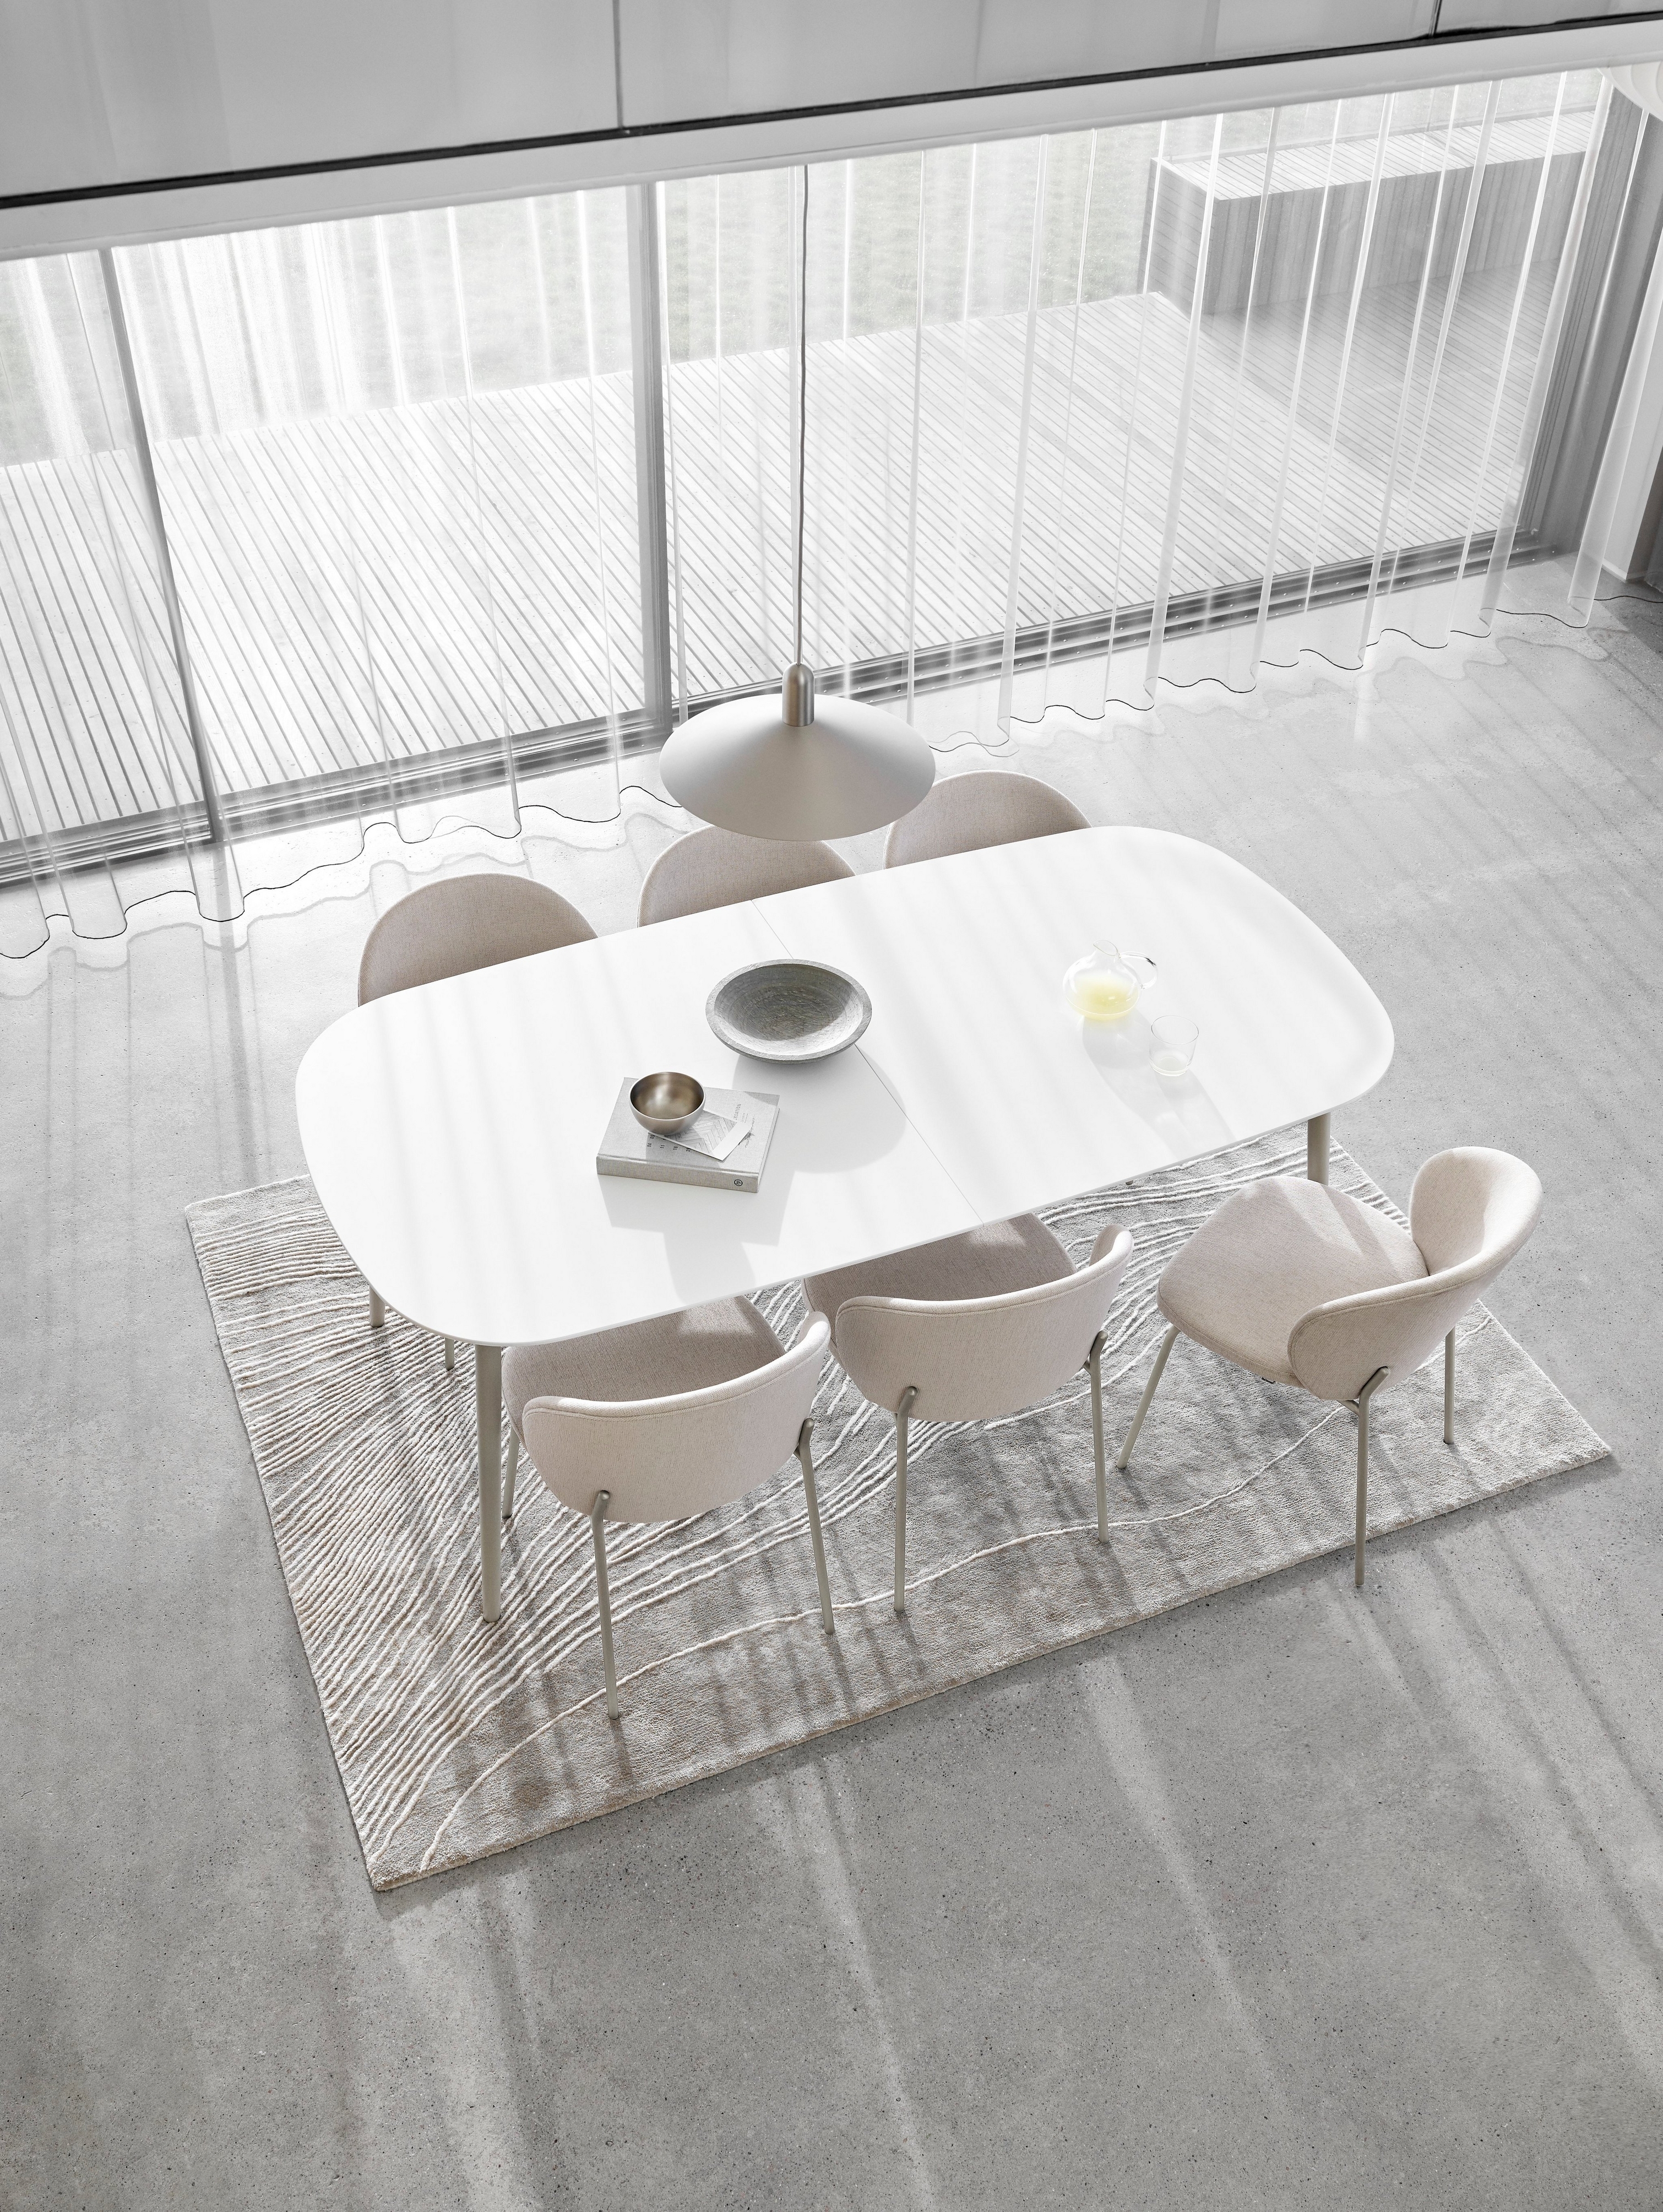 简约风格的用餐区，摆放着白色椭圆形餐桌、椅子、薄纱窗帘和质感地毯。